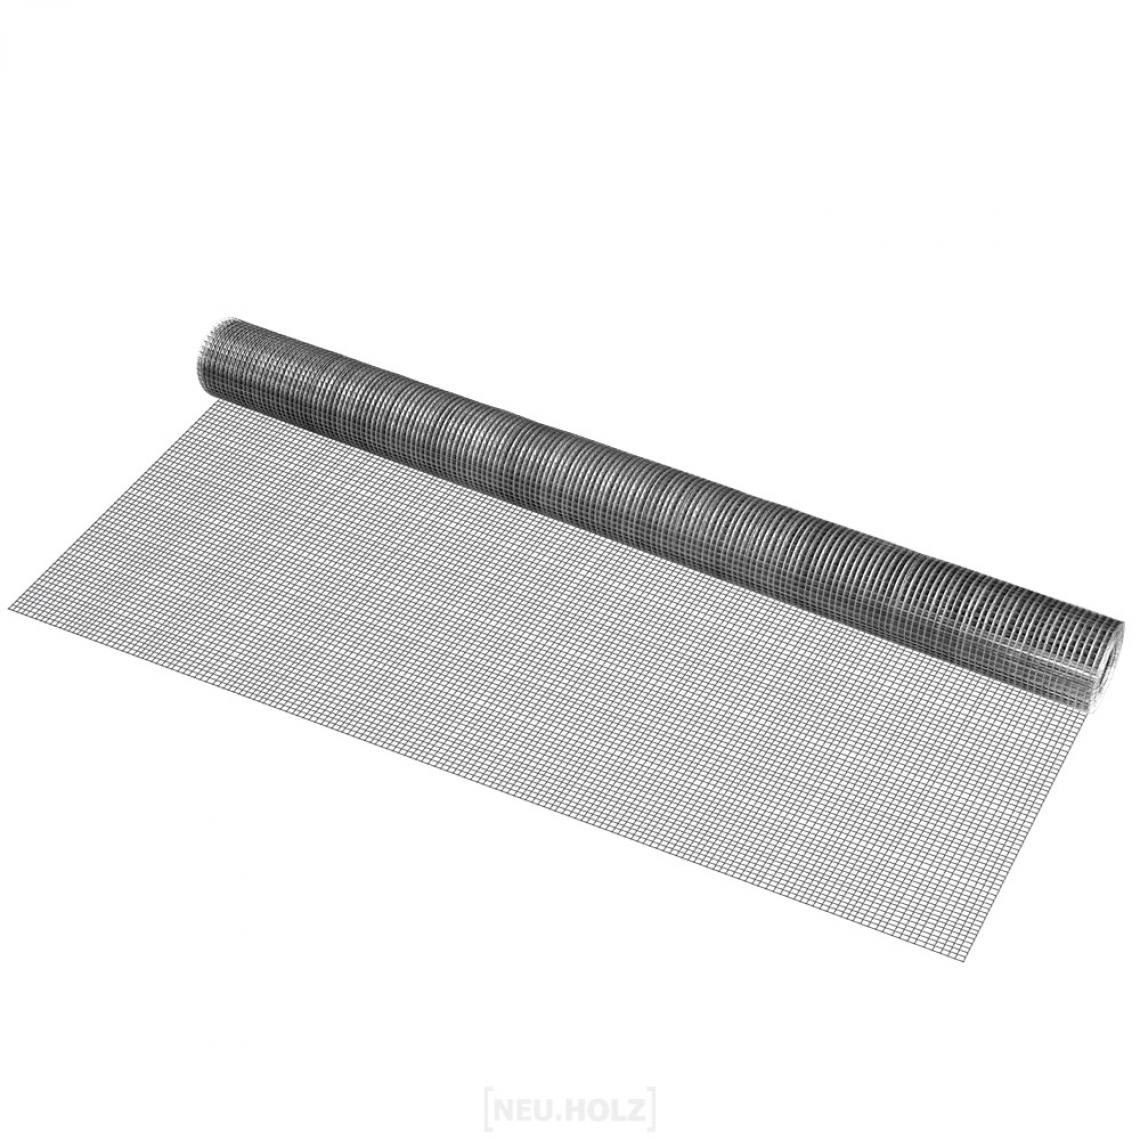 Pro.Tec - Grillage métallique en acier galvanisé 100 cm x 5 m gris argenté 1 rouleau [pro.tec] - Clôture grillagée